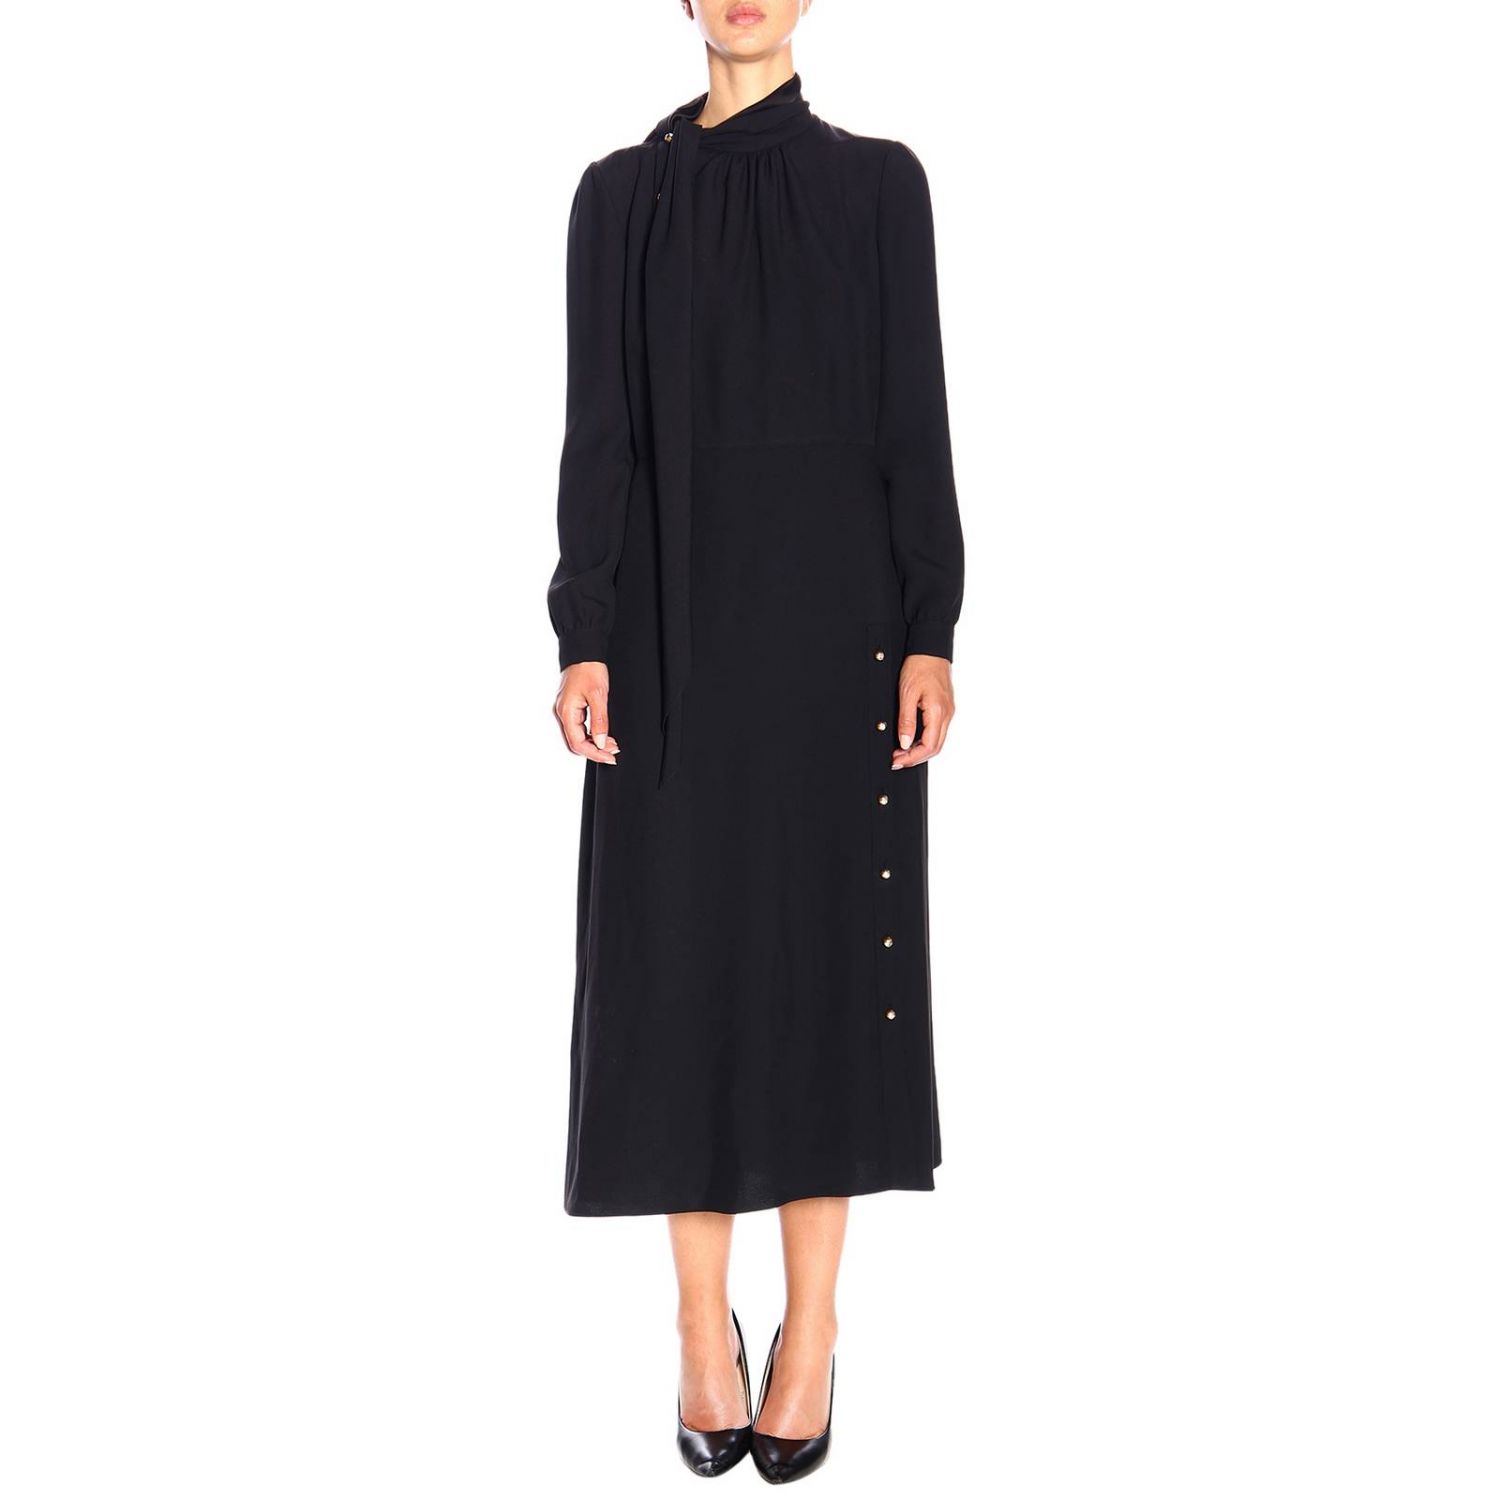 Prada long satin dress with foulard collar and buttons | Dress Prada ...